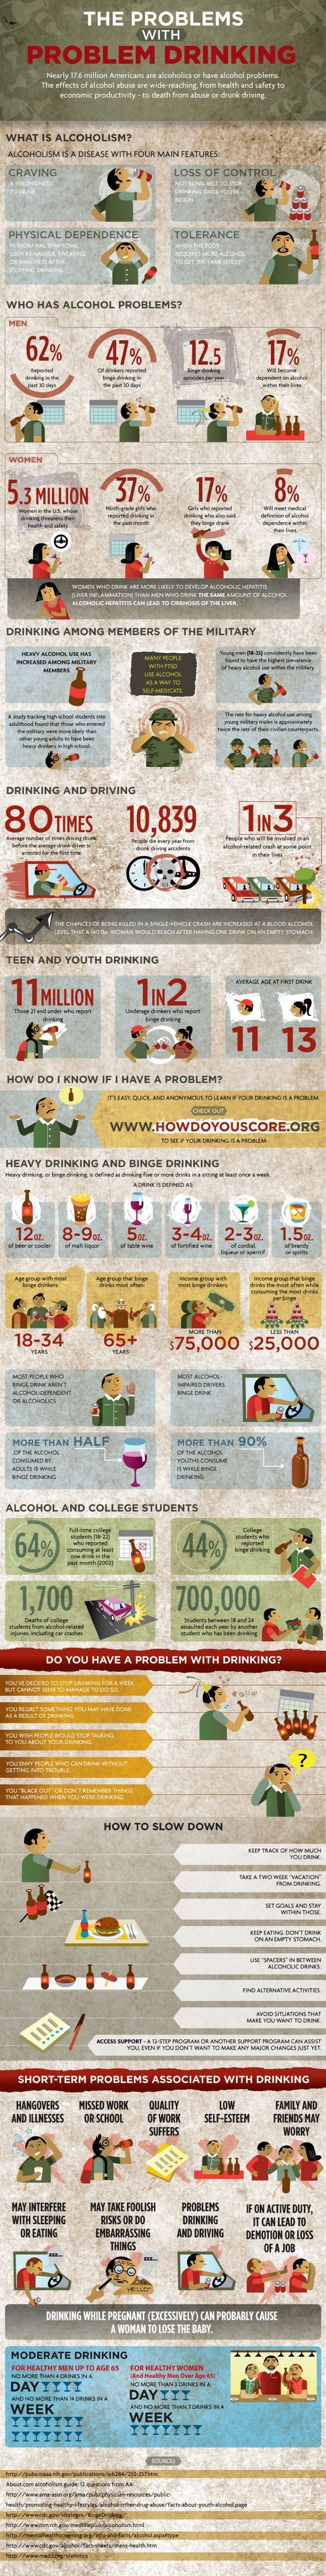 Effets nocifs de la consommation d'alcool